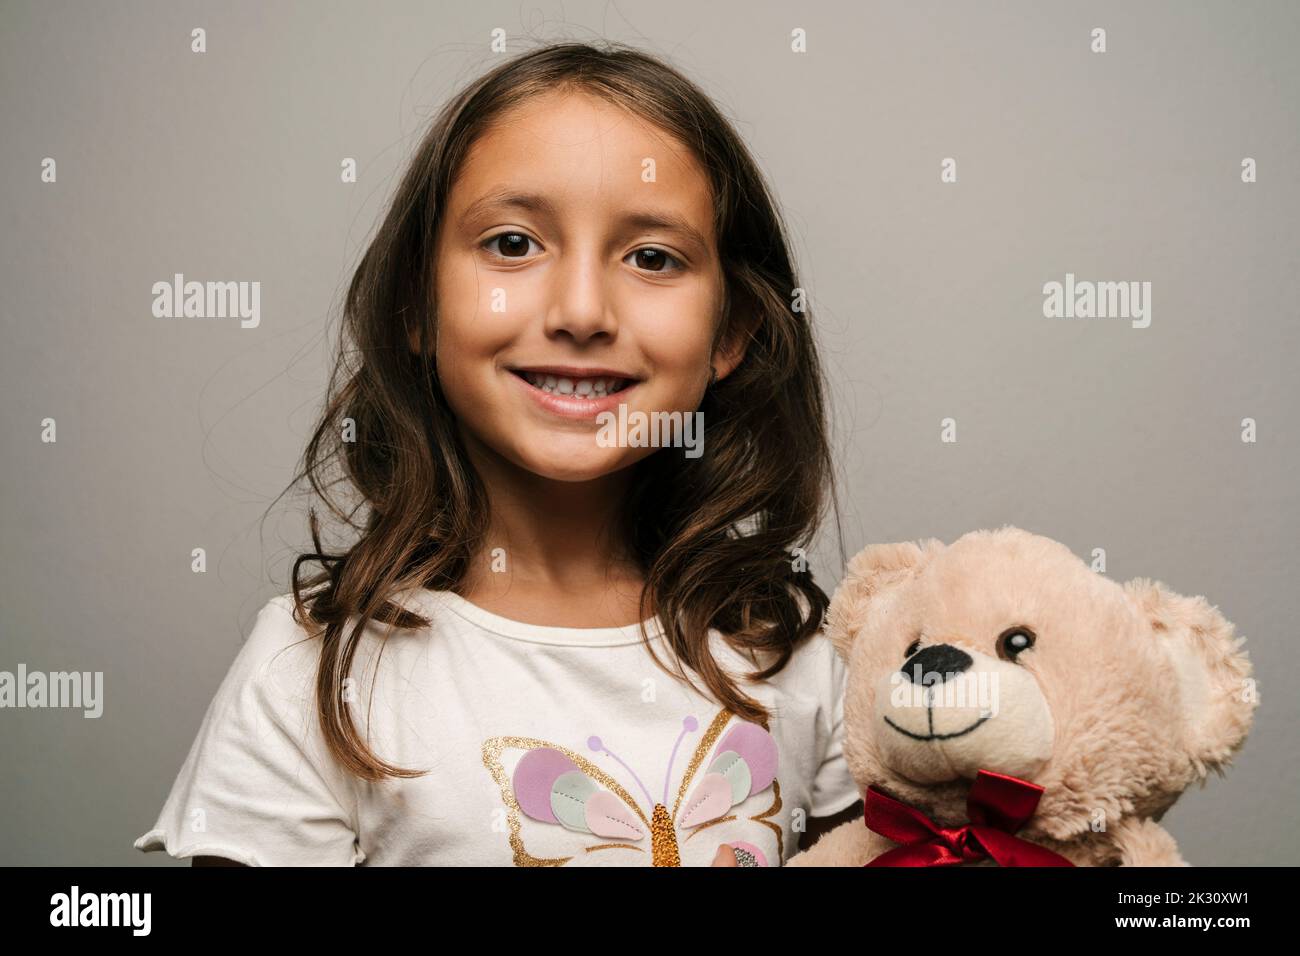 Fille souriante avec ours en peluche sur fond gris Banque D'Images